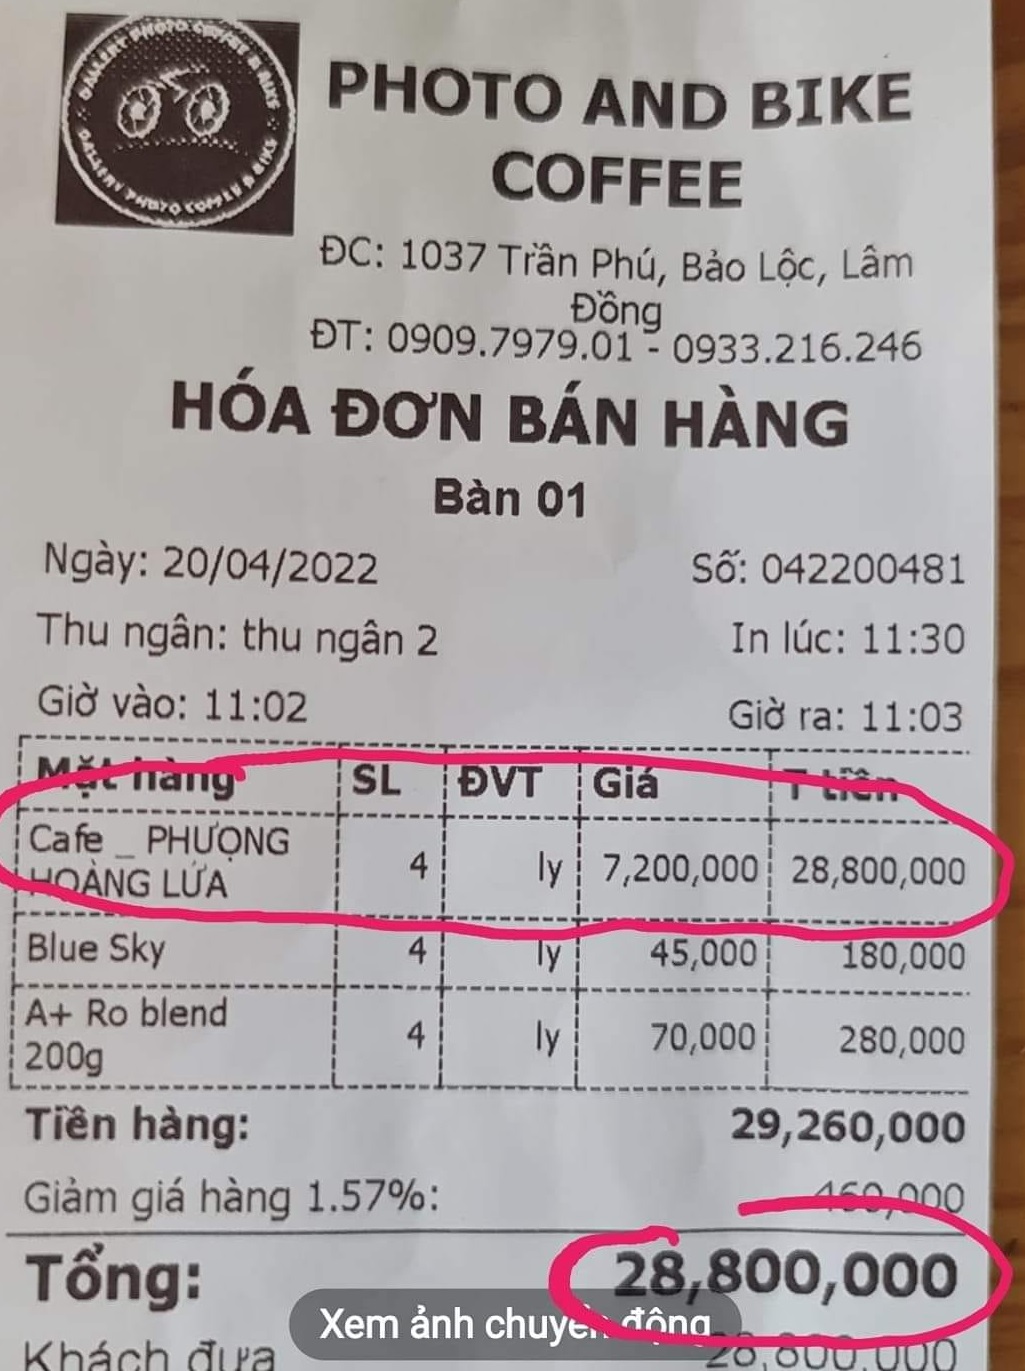  Lại xôn xao ly cà phê Phượng Hoàng lửa 7,2 triệu đồng: Chủ quán tự in hóa đơn để câu like  - Ảnh 1.